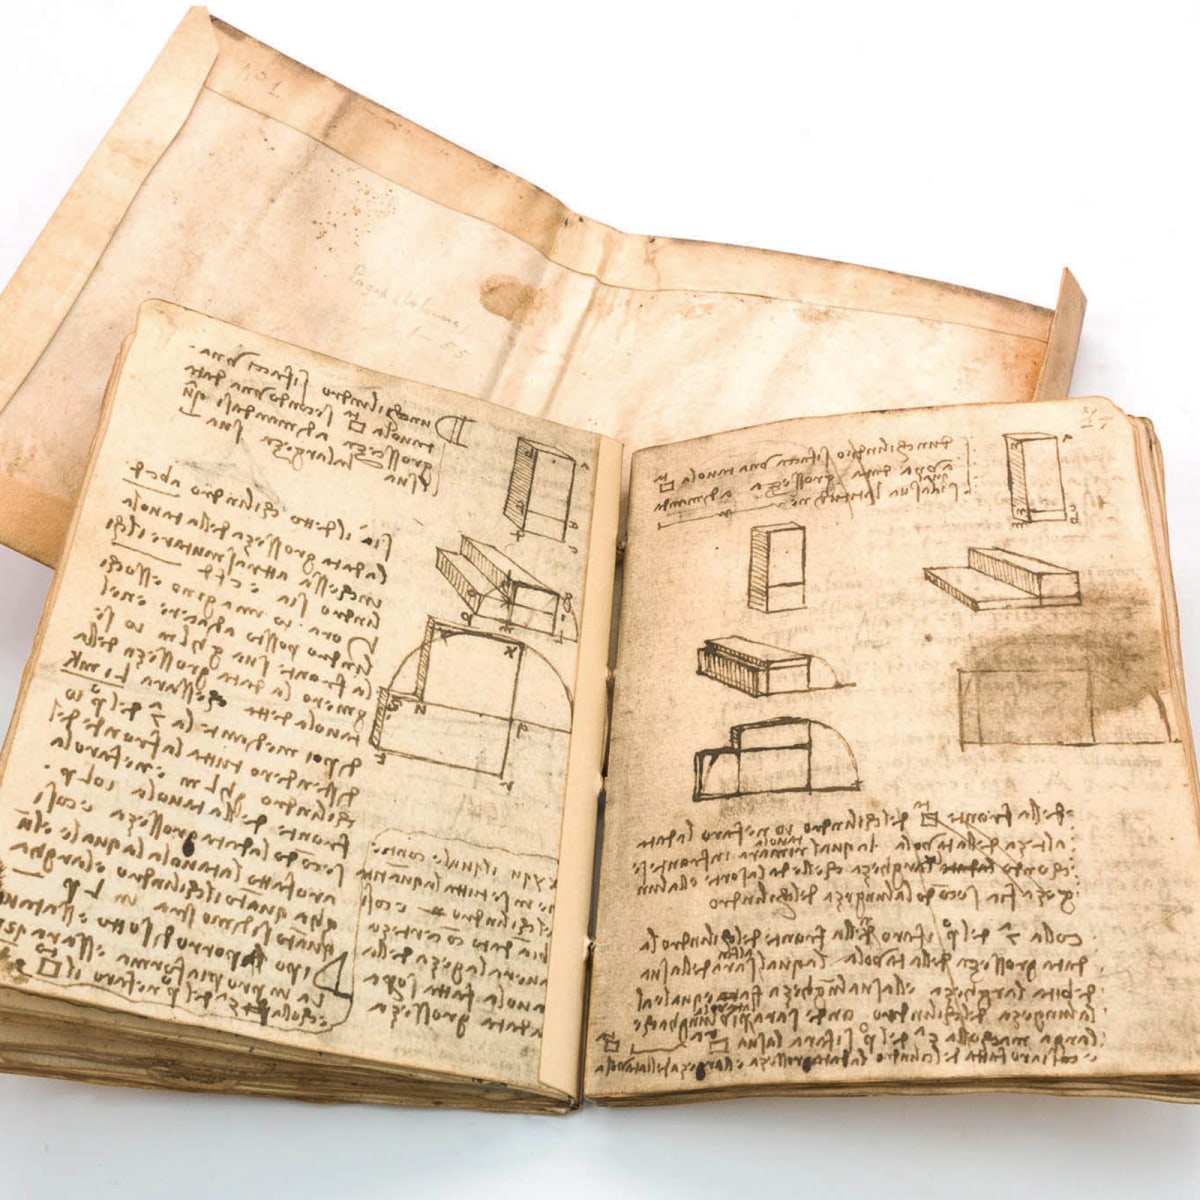 mando Bañera Pakistán Descubriendo los cuadernos digitales de Leonardo da Vinci | Domestika